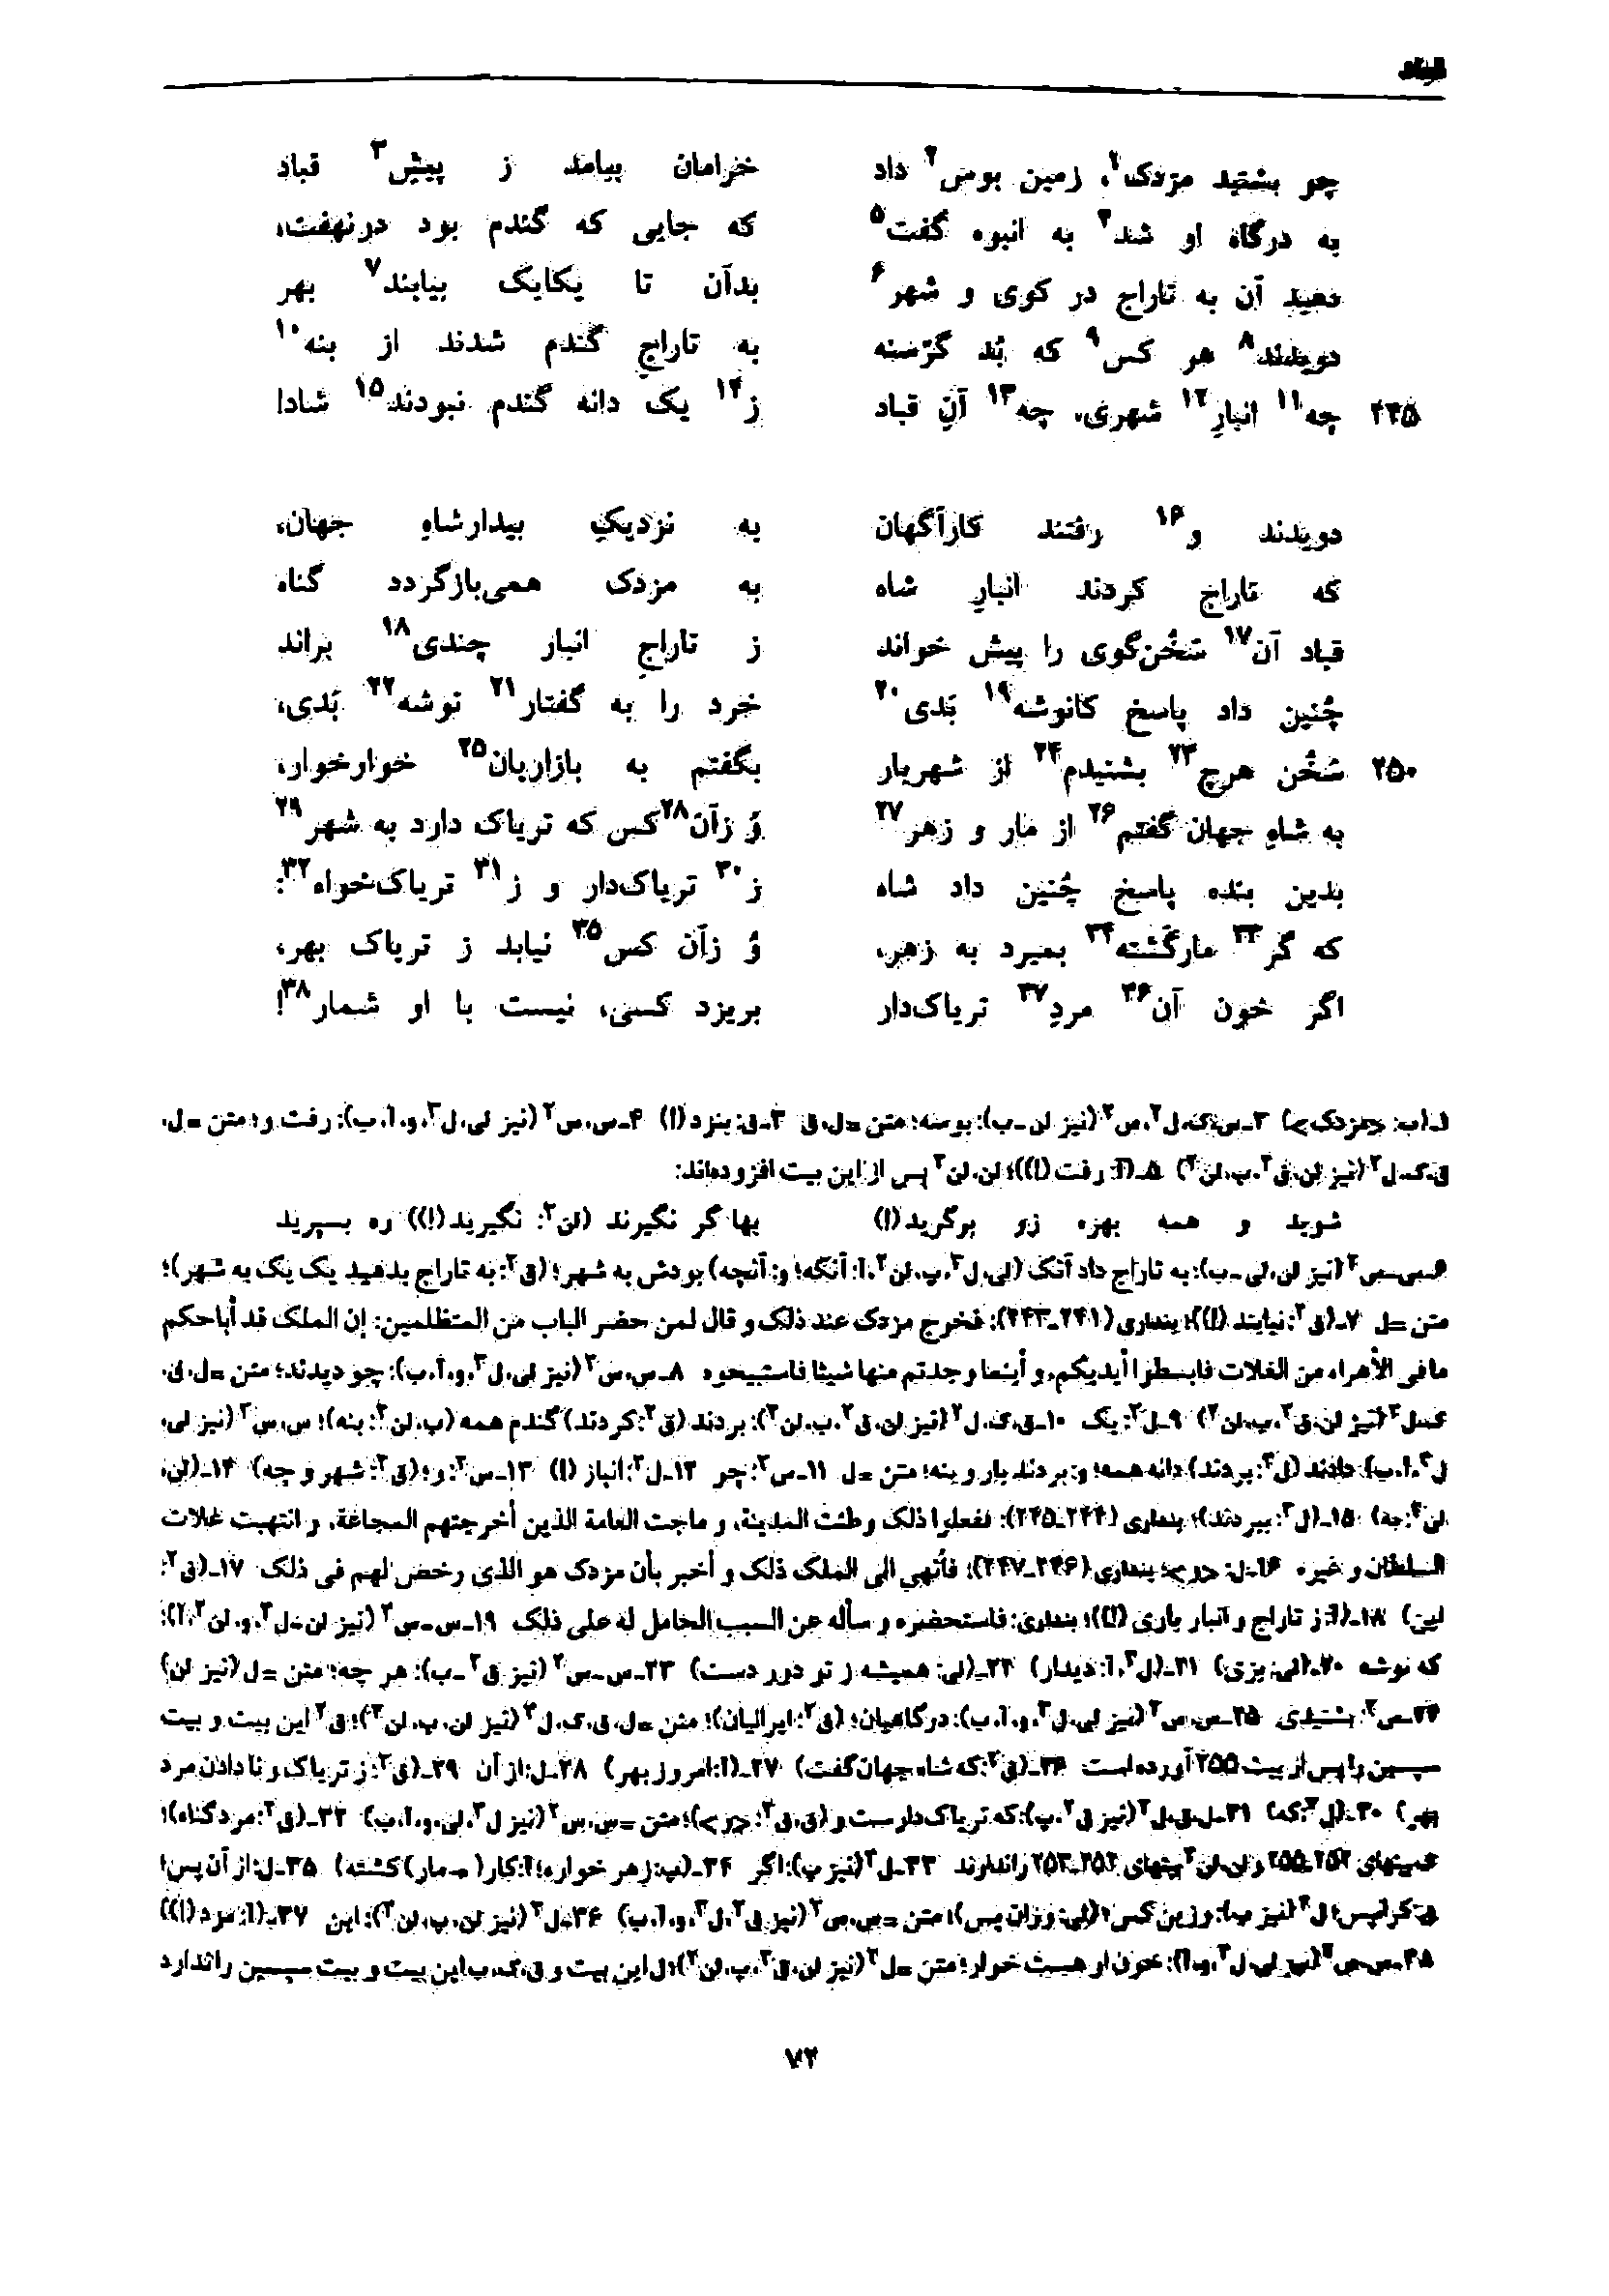 vol. 7, p. 72